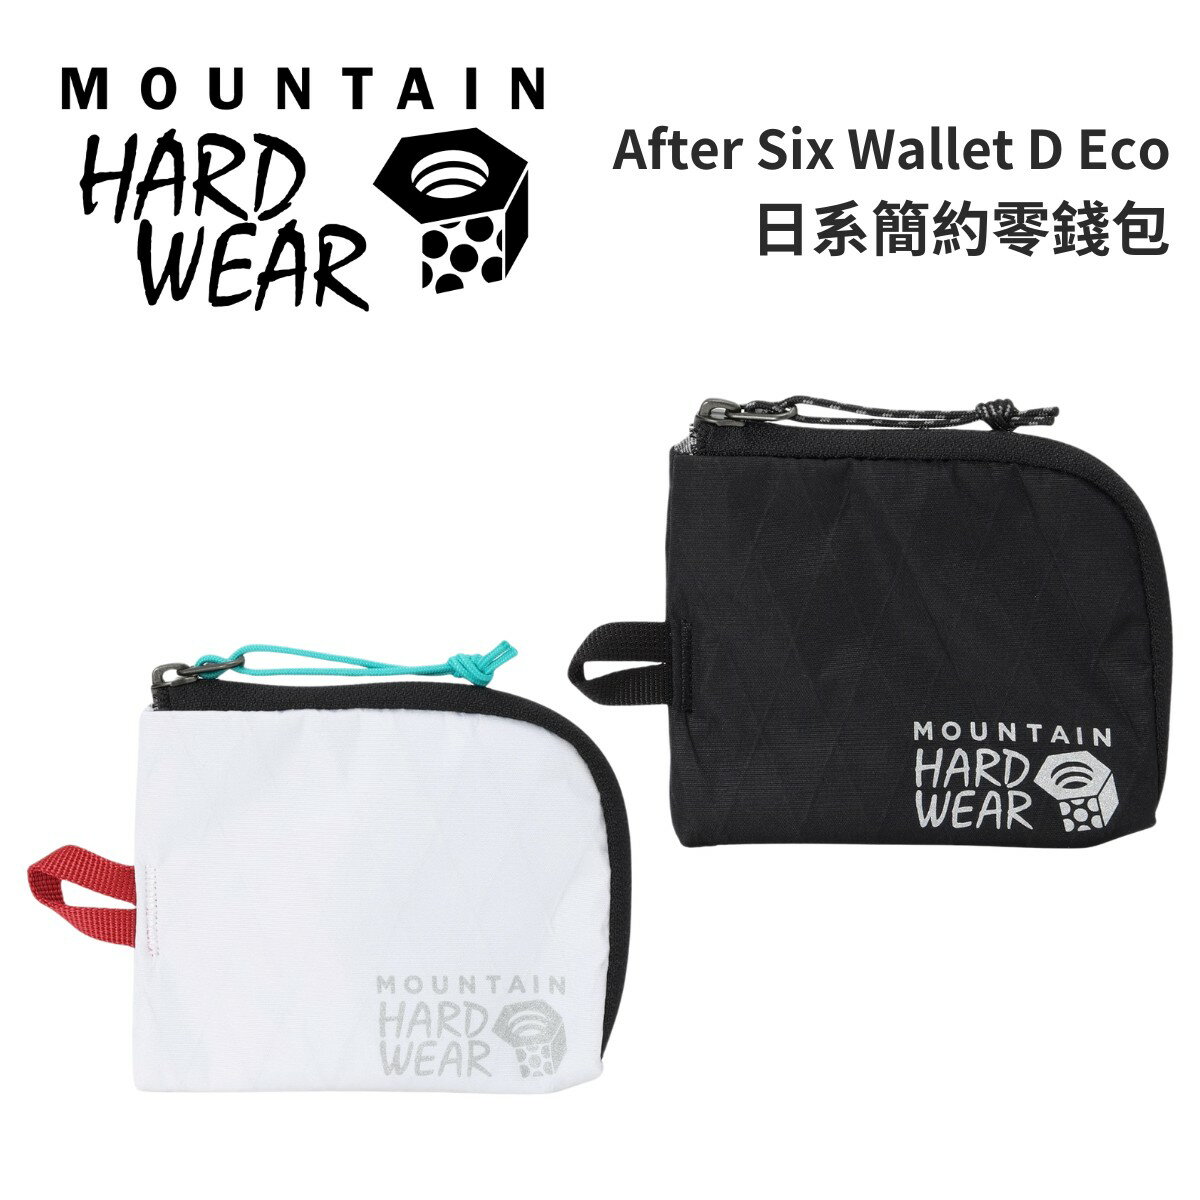 【Mountain Hardwear】After Six Wallet D Eco 日系簡約零錢包